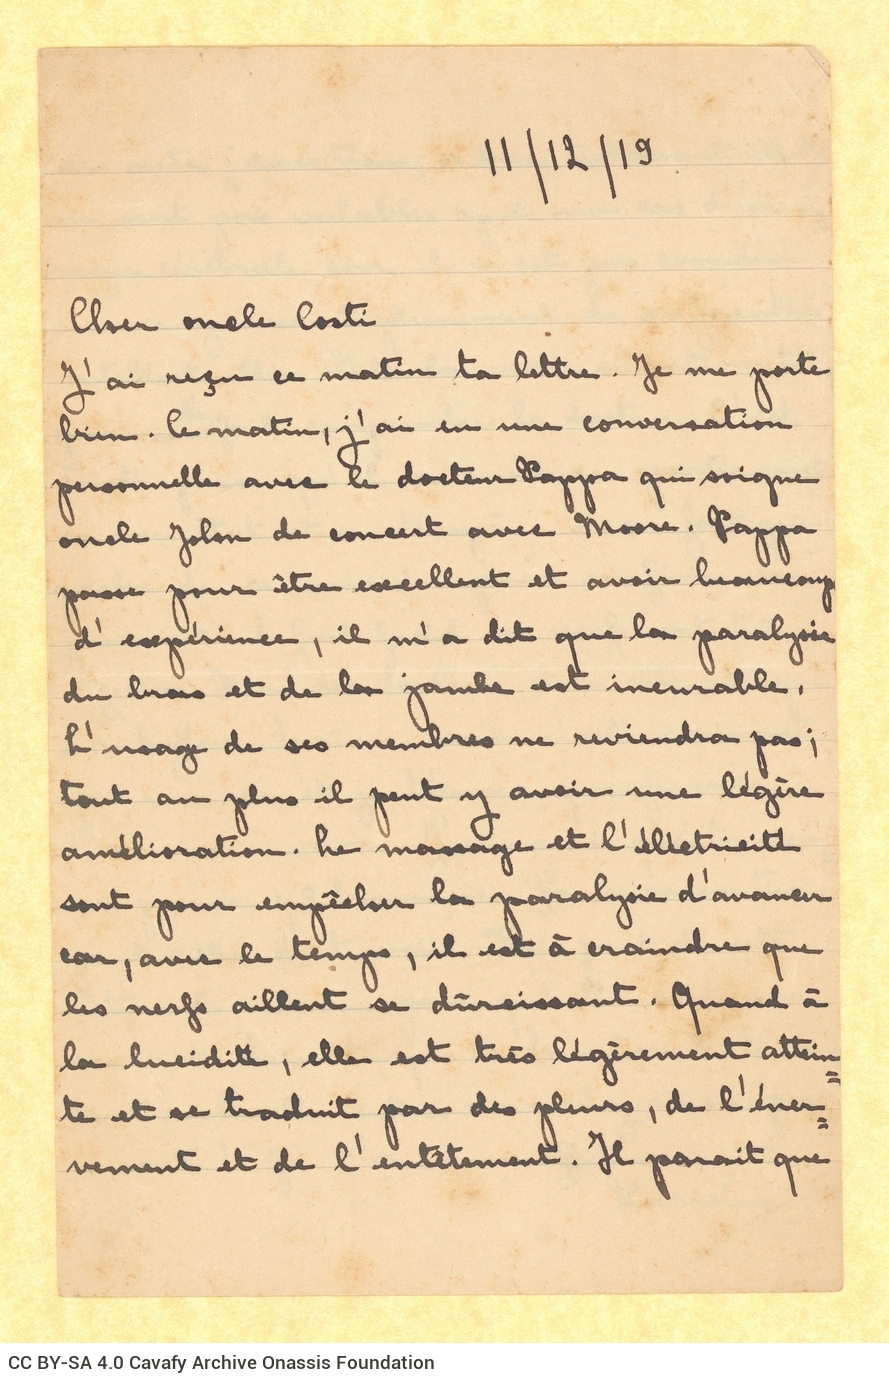 Χειρόγραφη επιστολή της Χαρίκλειας Α. Καβάφη, ανιψιάς του Κ. Π. Καβάφ�